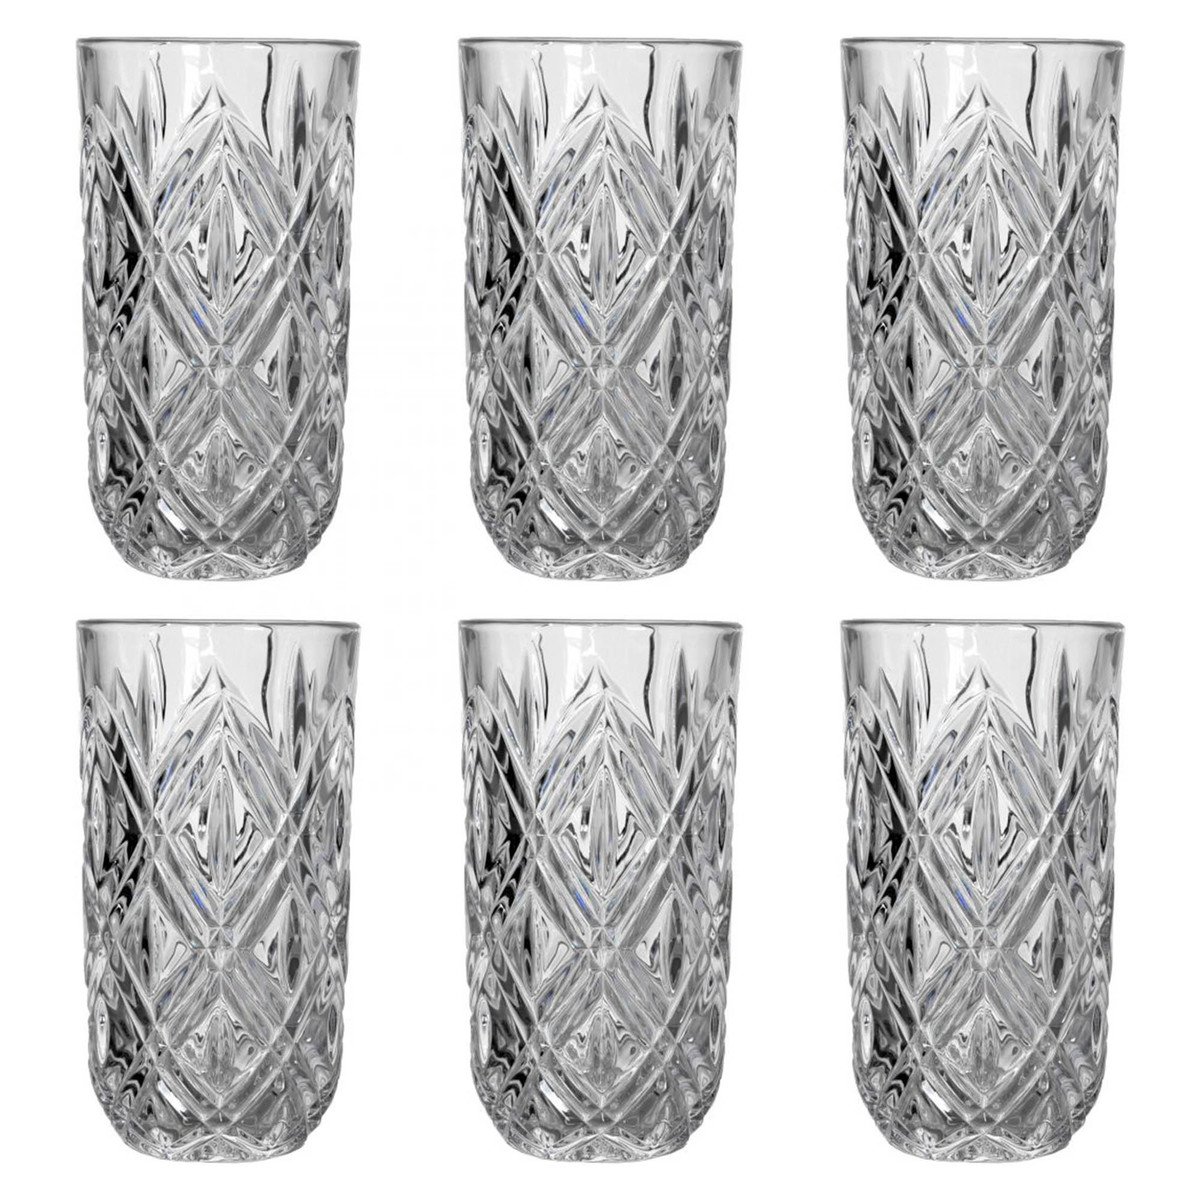 Cristal Collection Glass Venice 6pcs